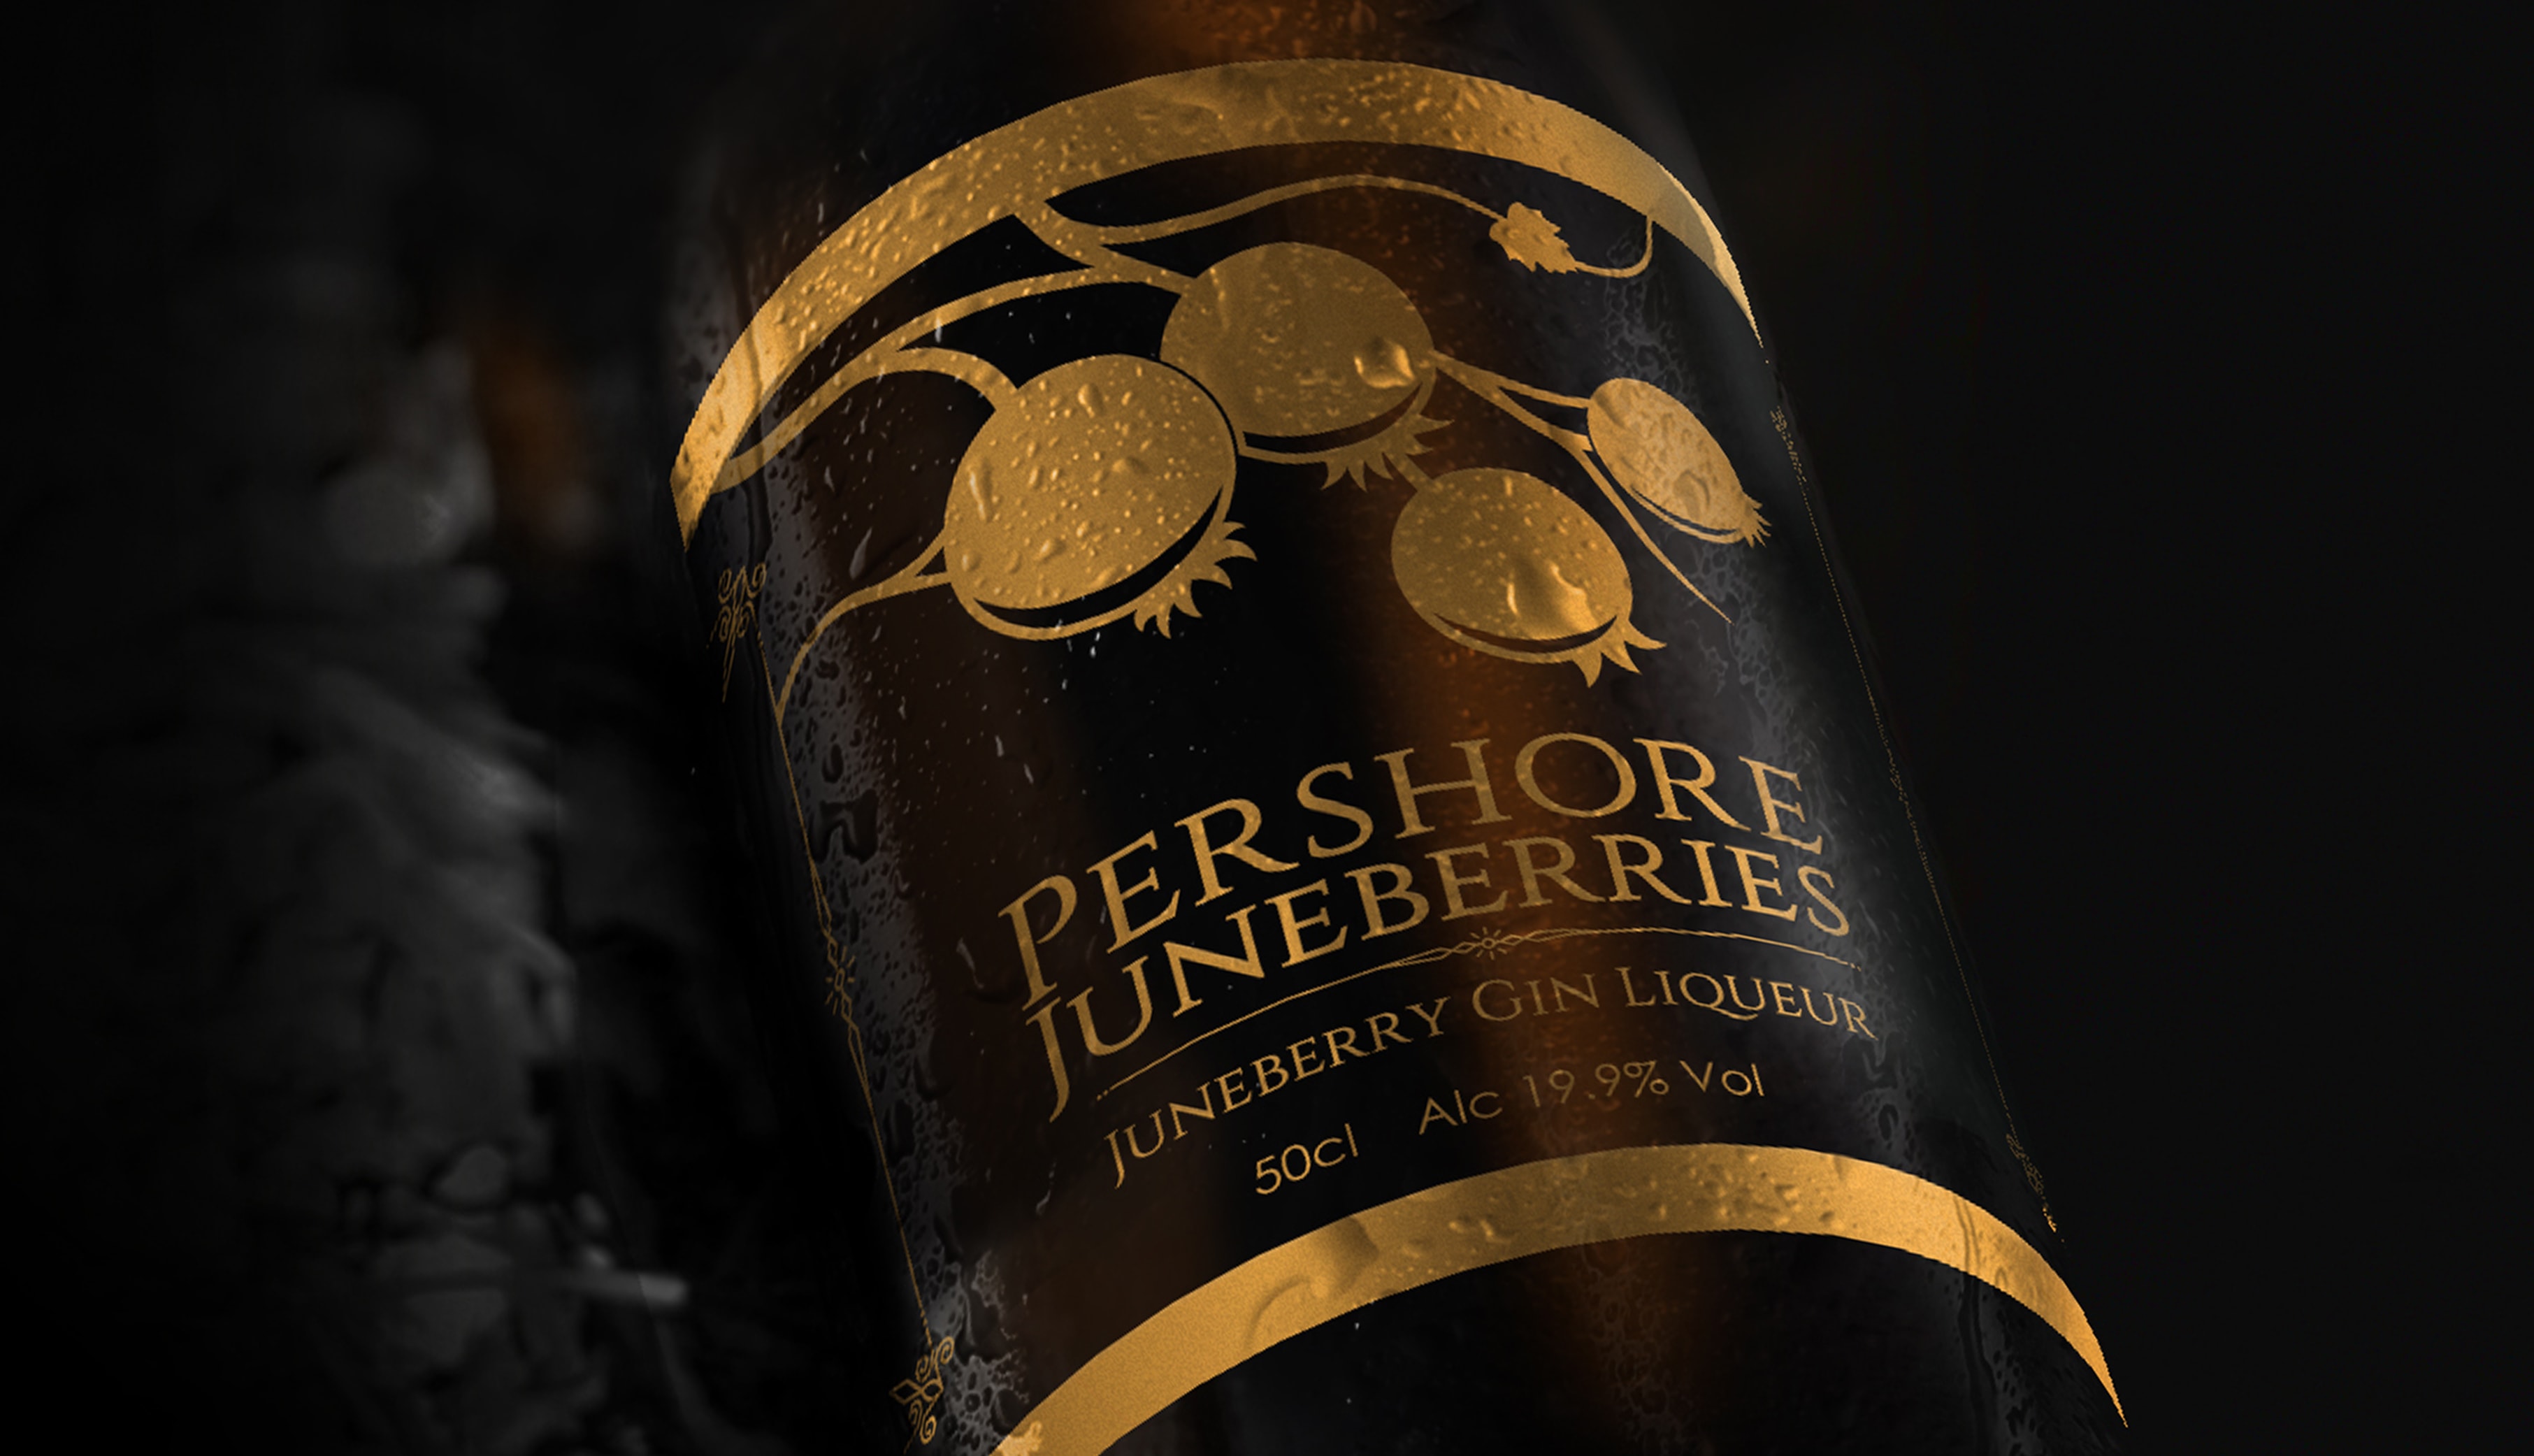 Pershore Juneberries Gin